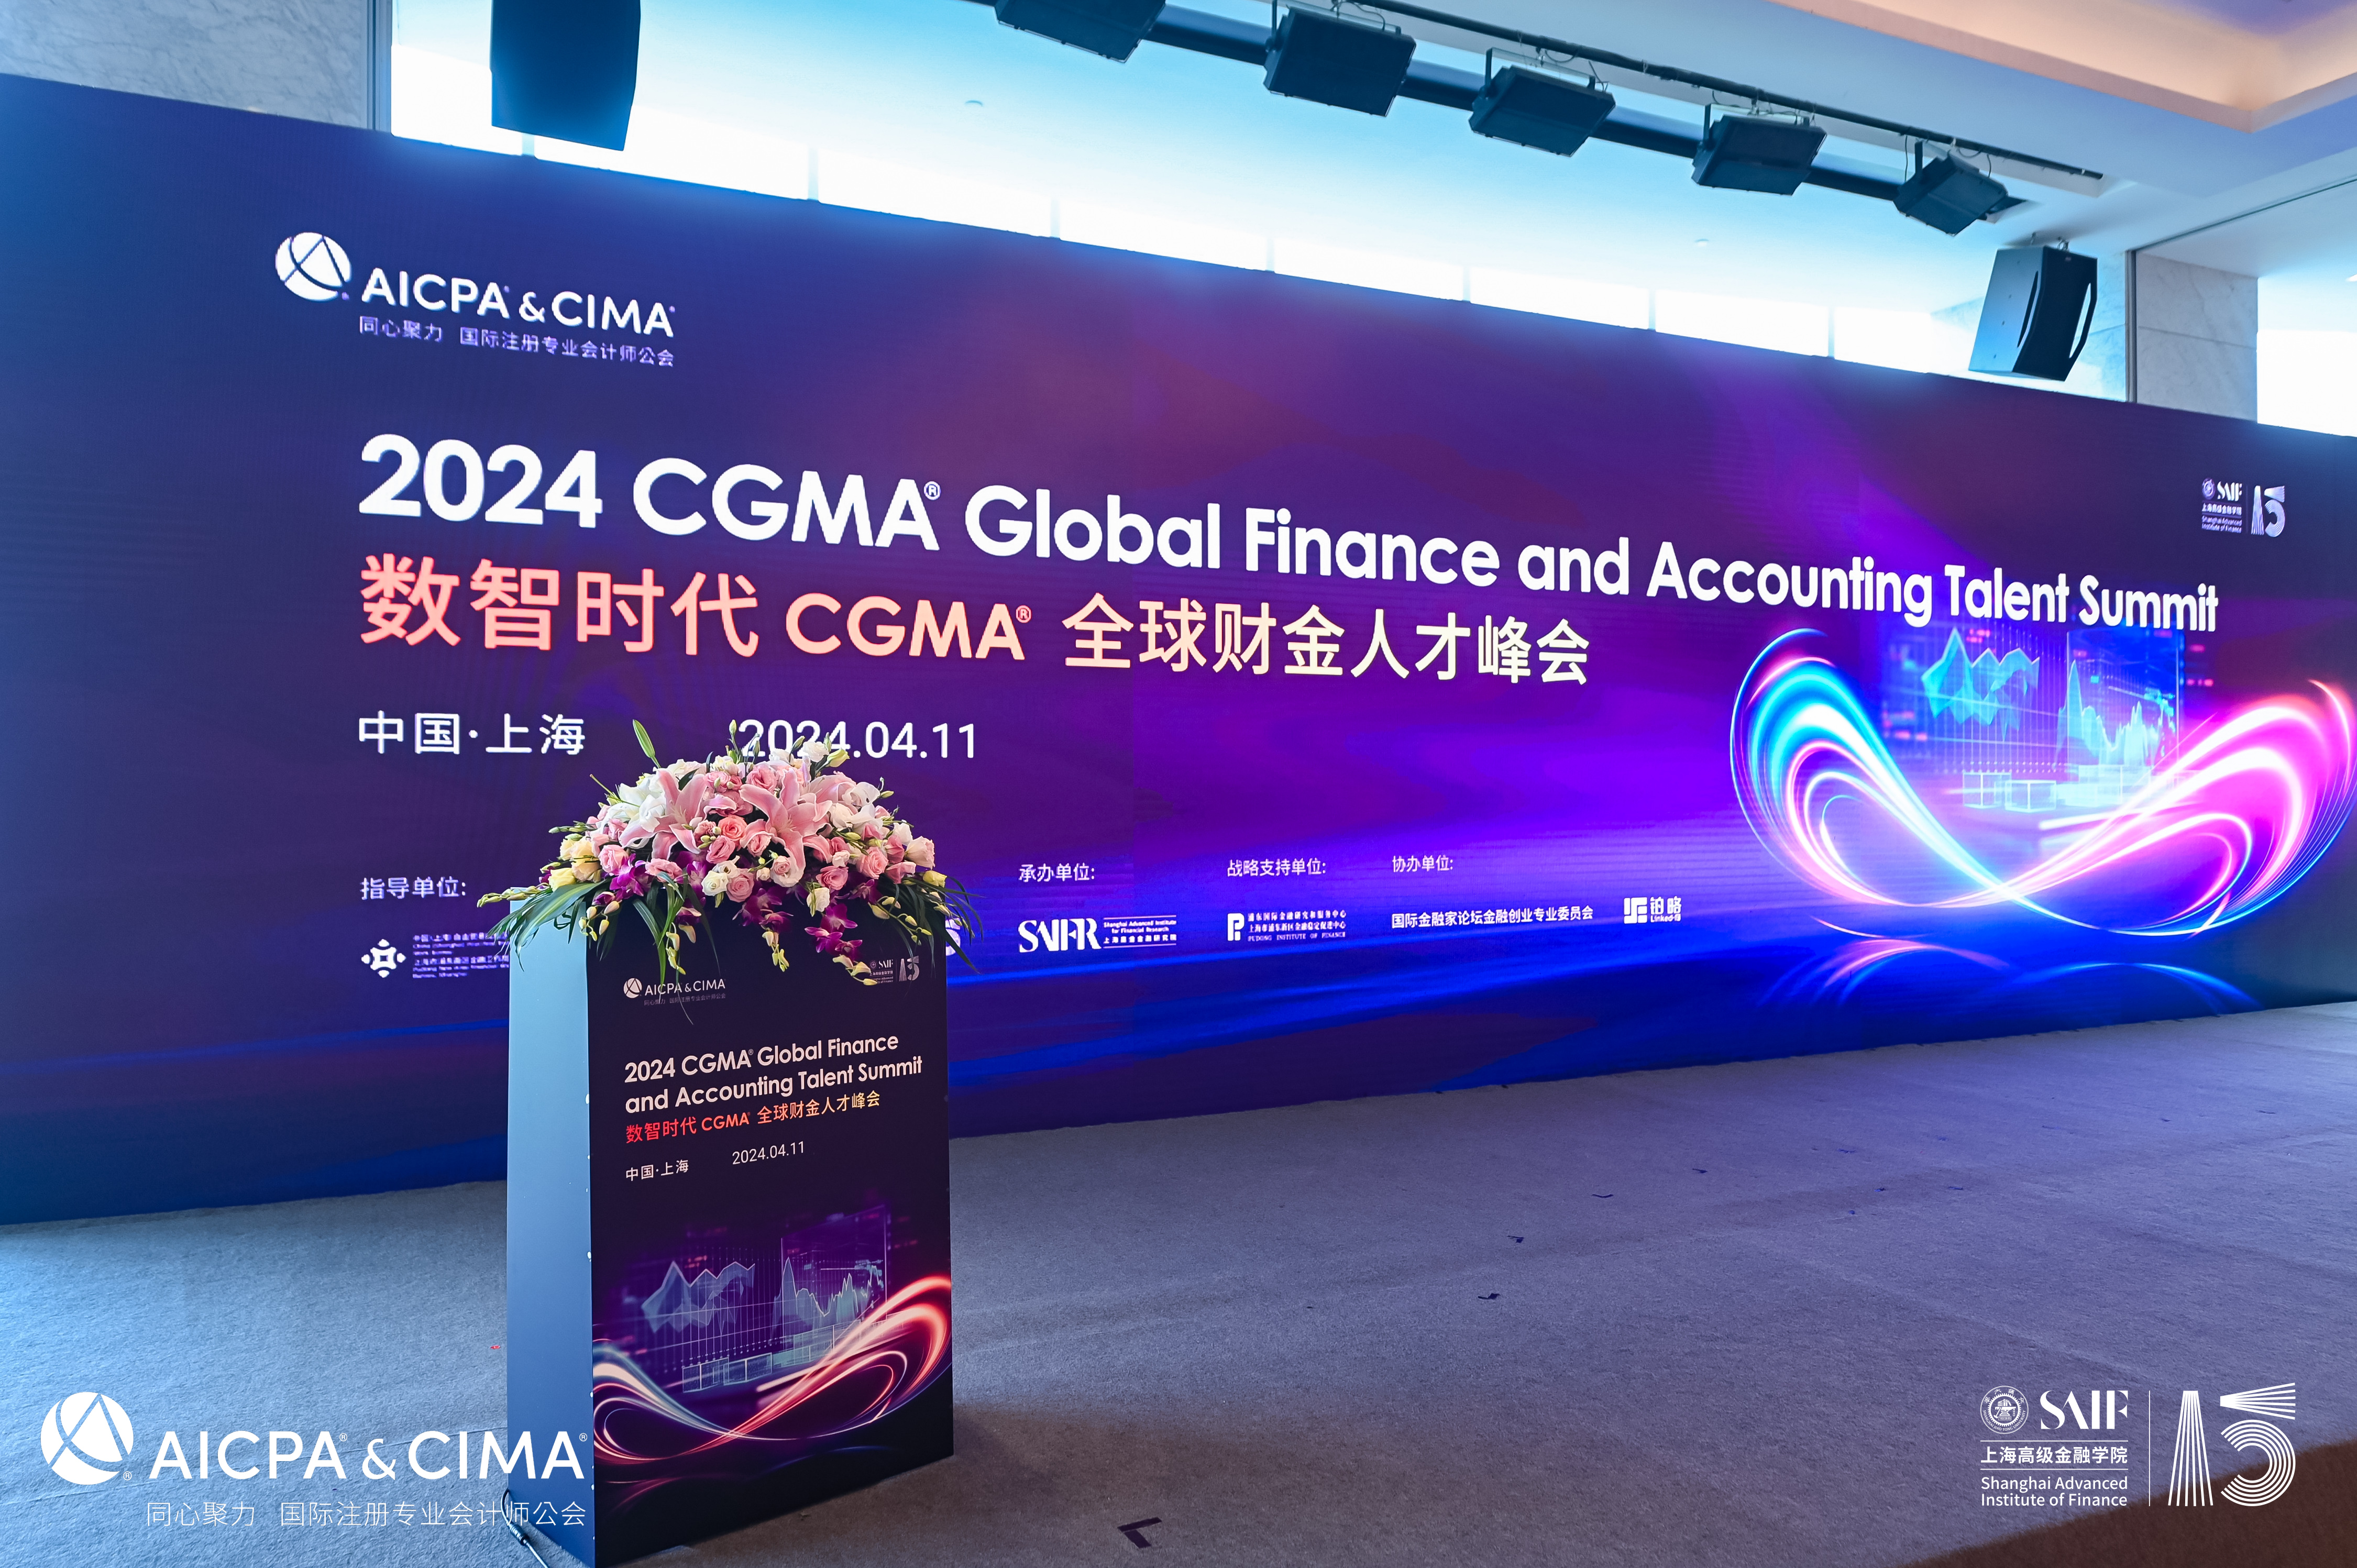 国际注册专业会计师公会（AICPA & CIMA）携手上海交通大学上海高级金融学院举办2024 数智时代CGMA全球财金人才峰会